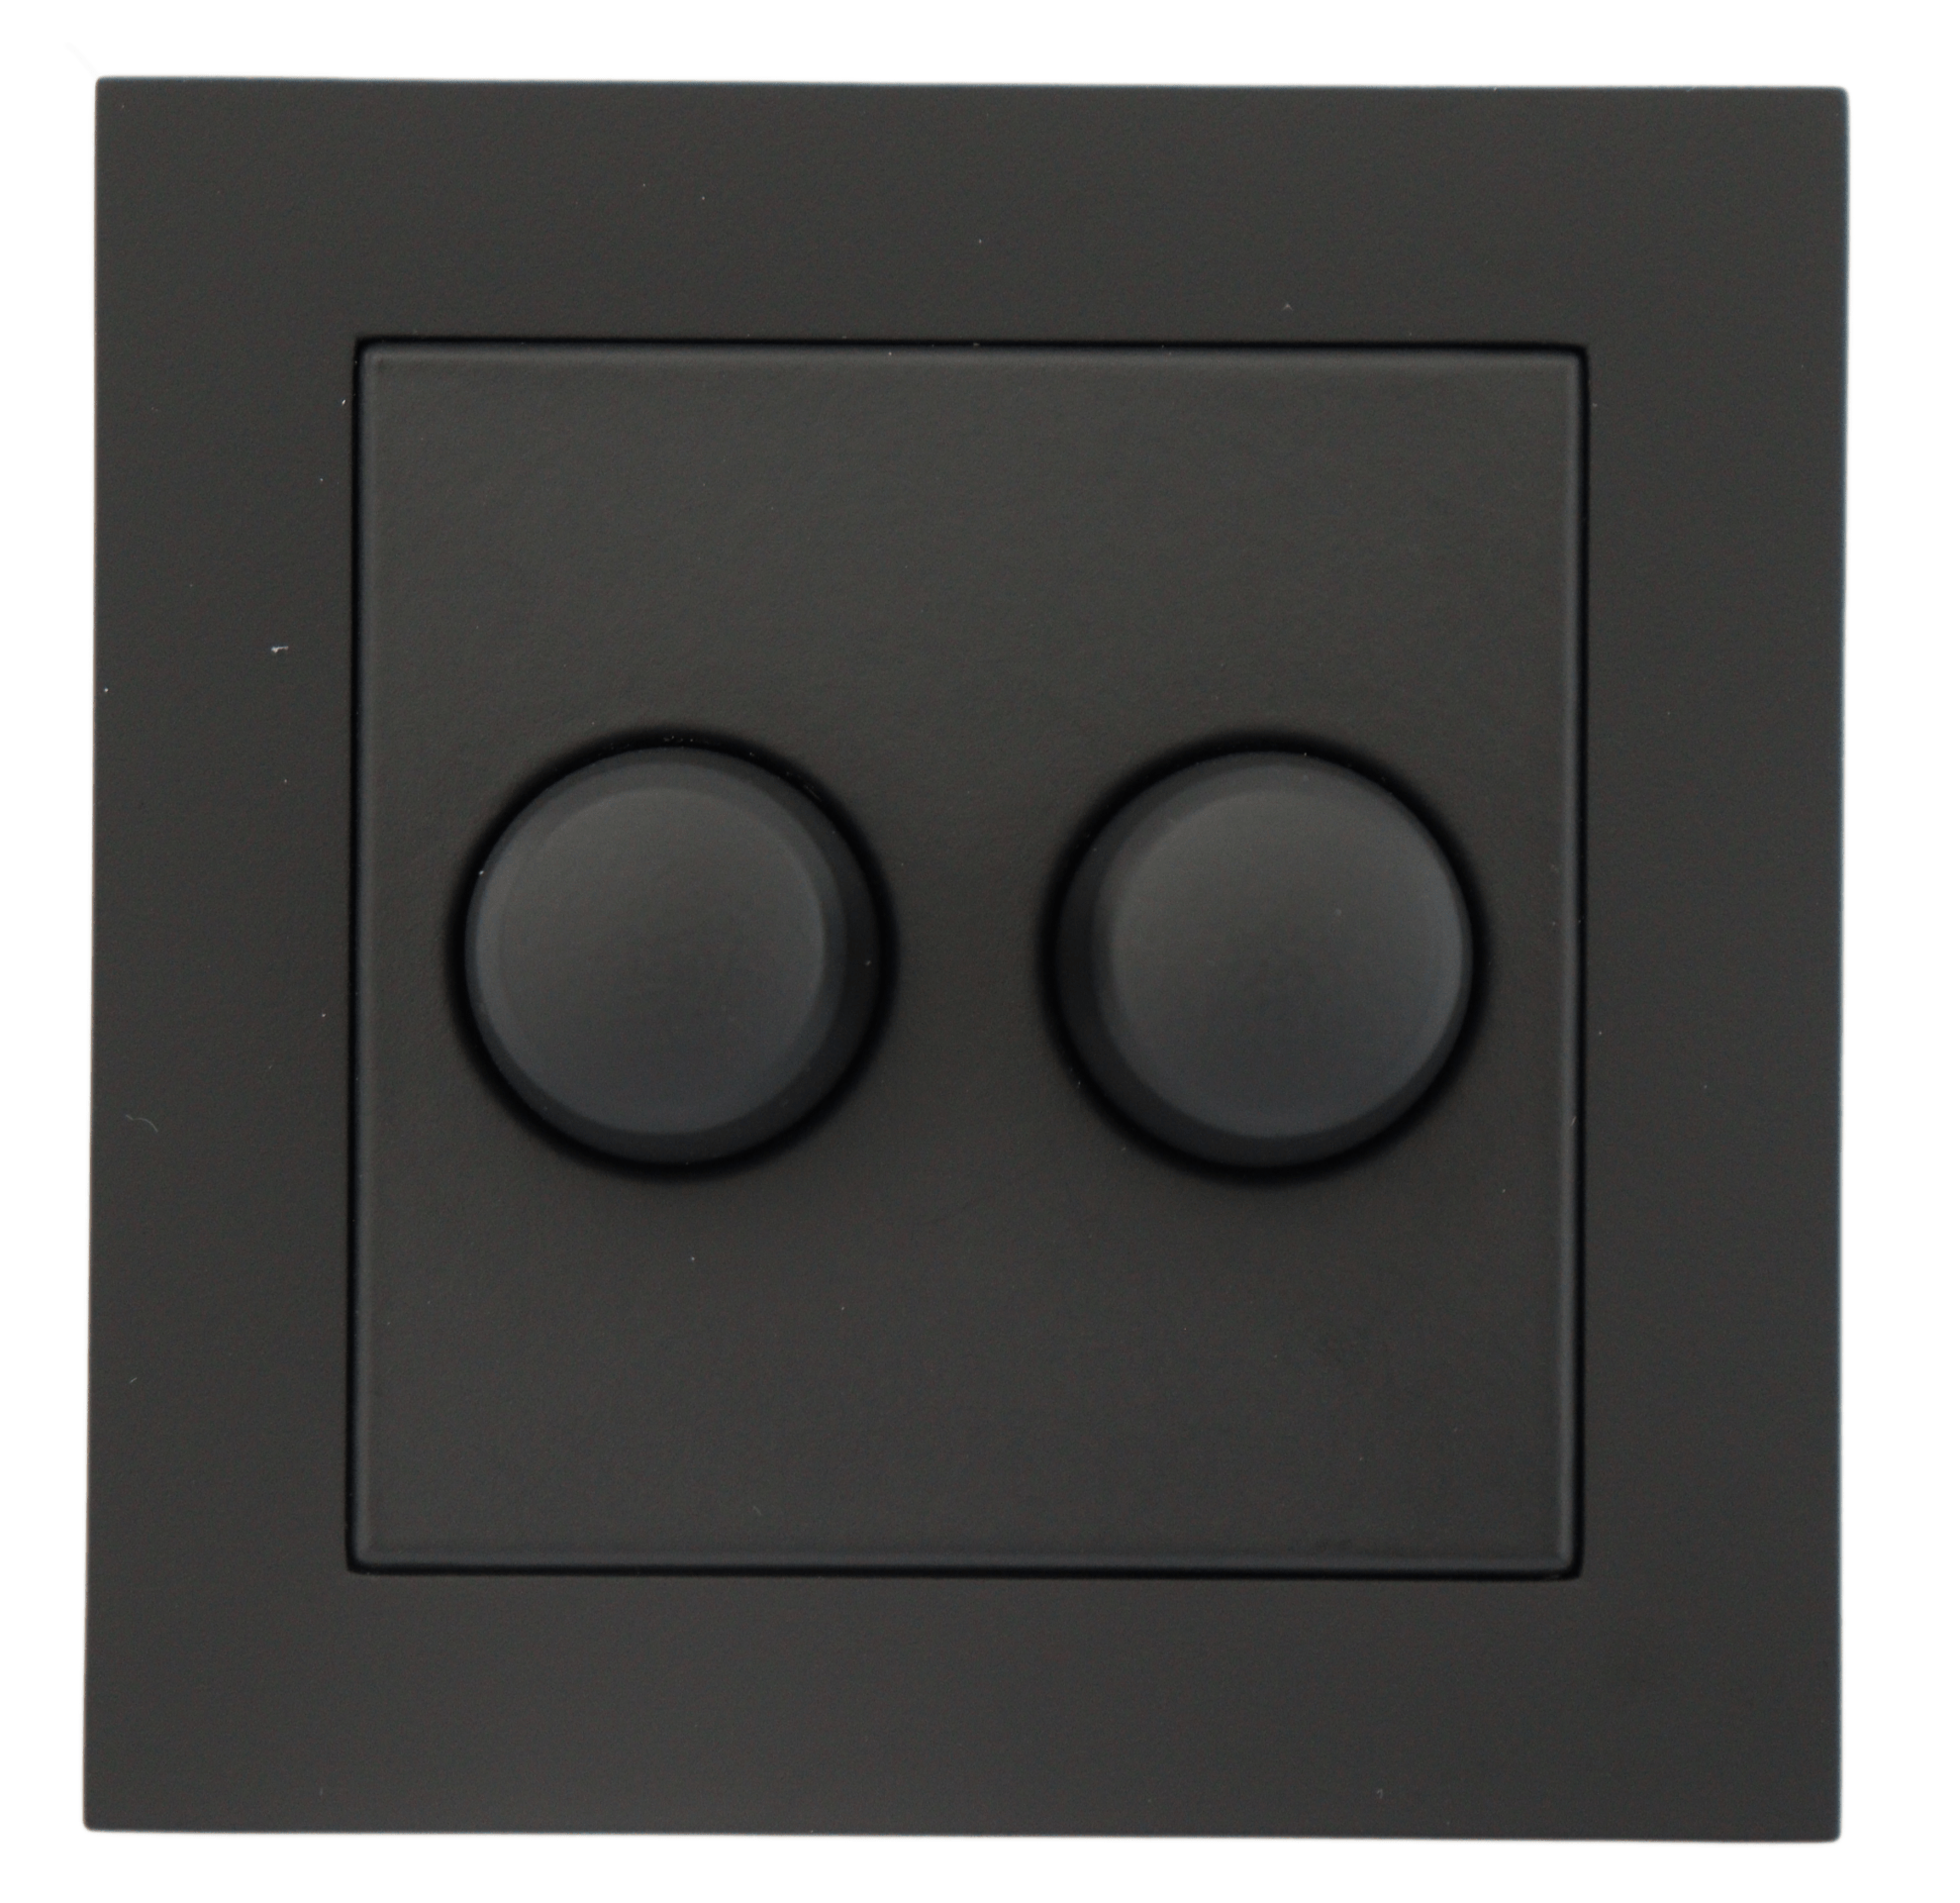 Inlegplaatje Gira duo inclusief knoppen (mat zwart)